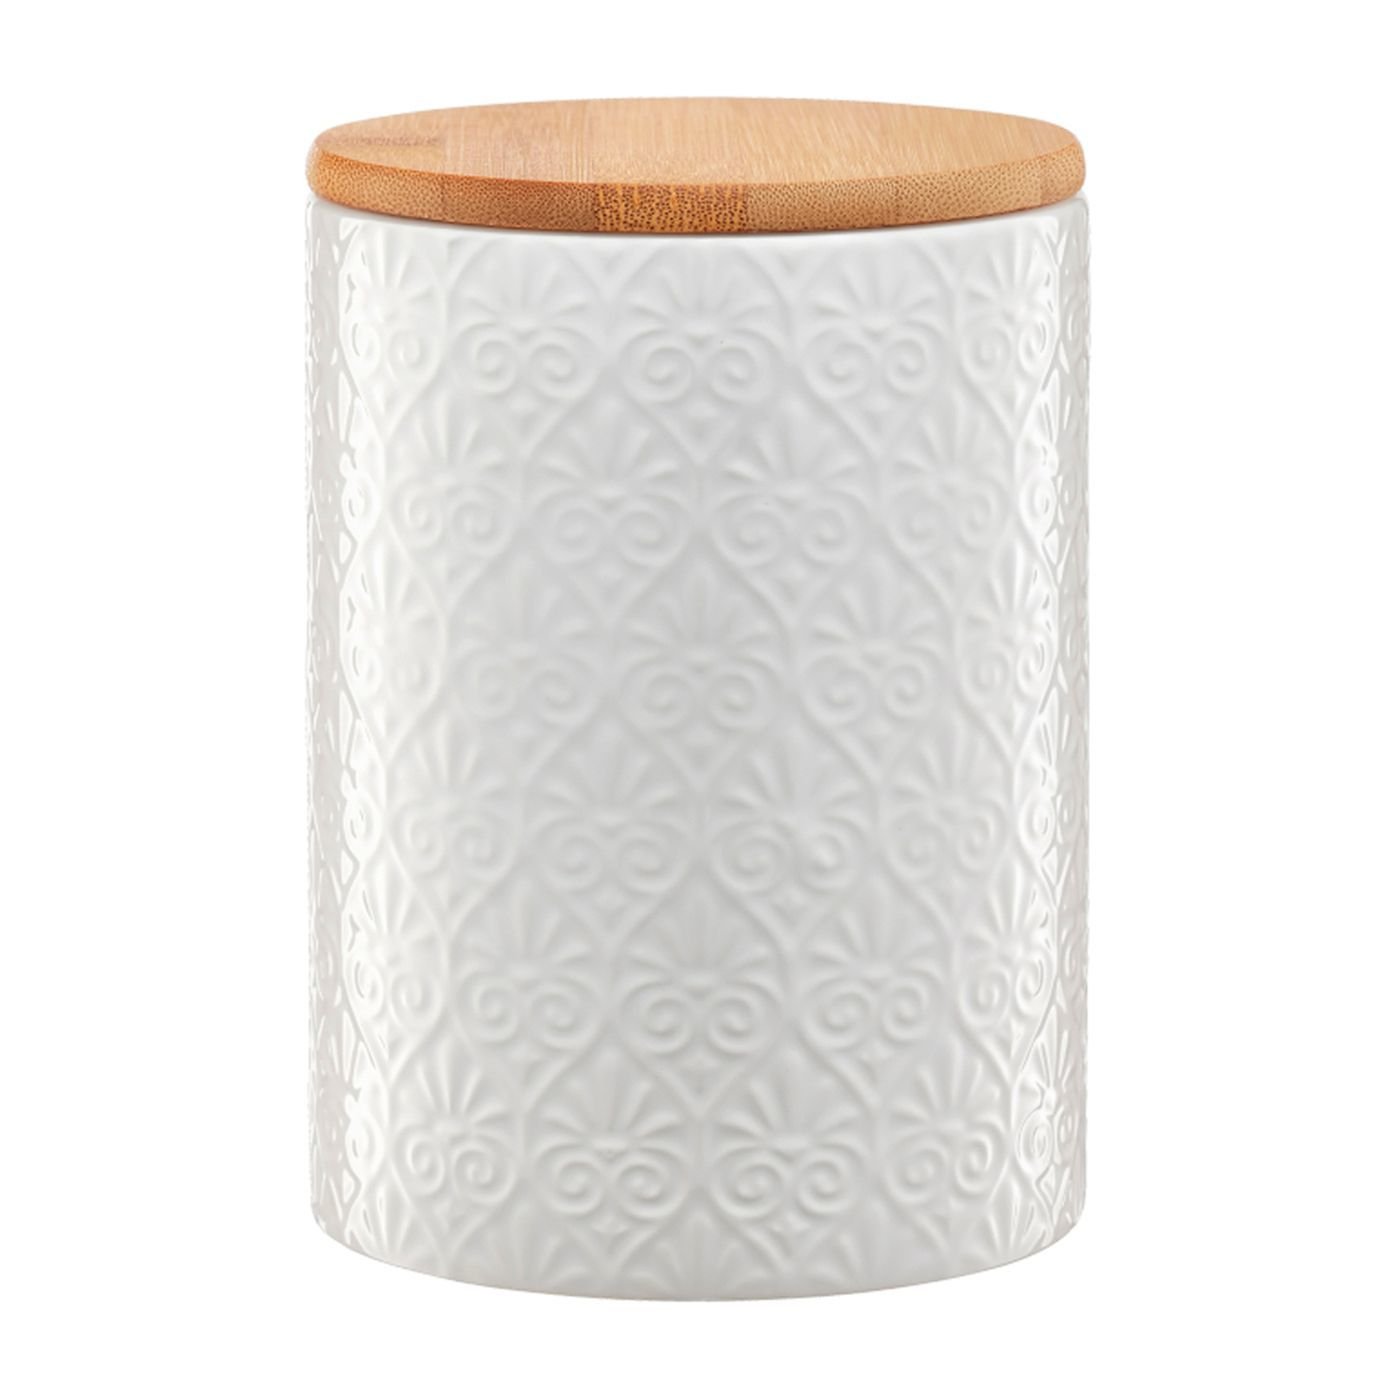 Birių produktų indas su bambukiniu dangteliu AMBITION TUVO, 11 x 11 x 15,7 cm